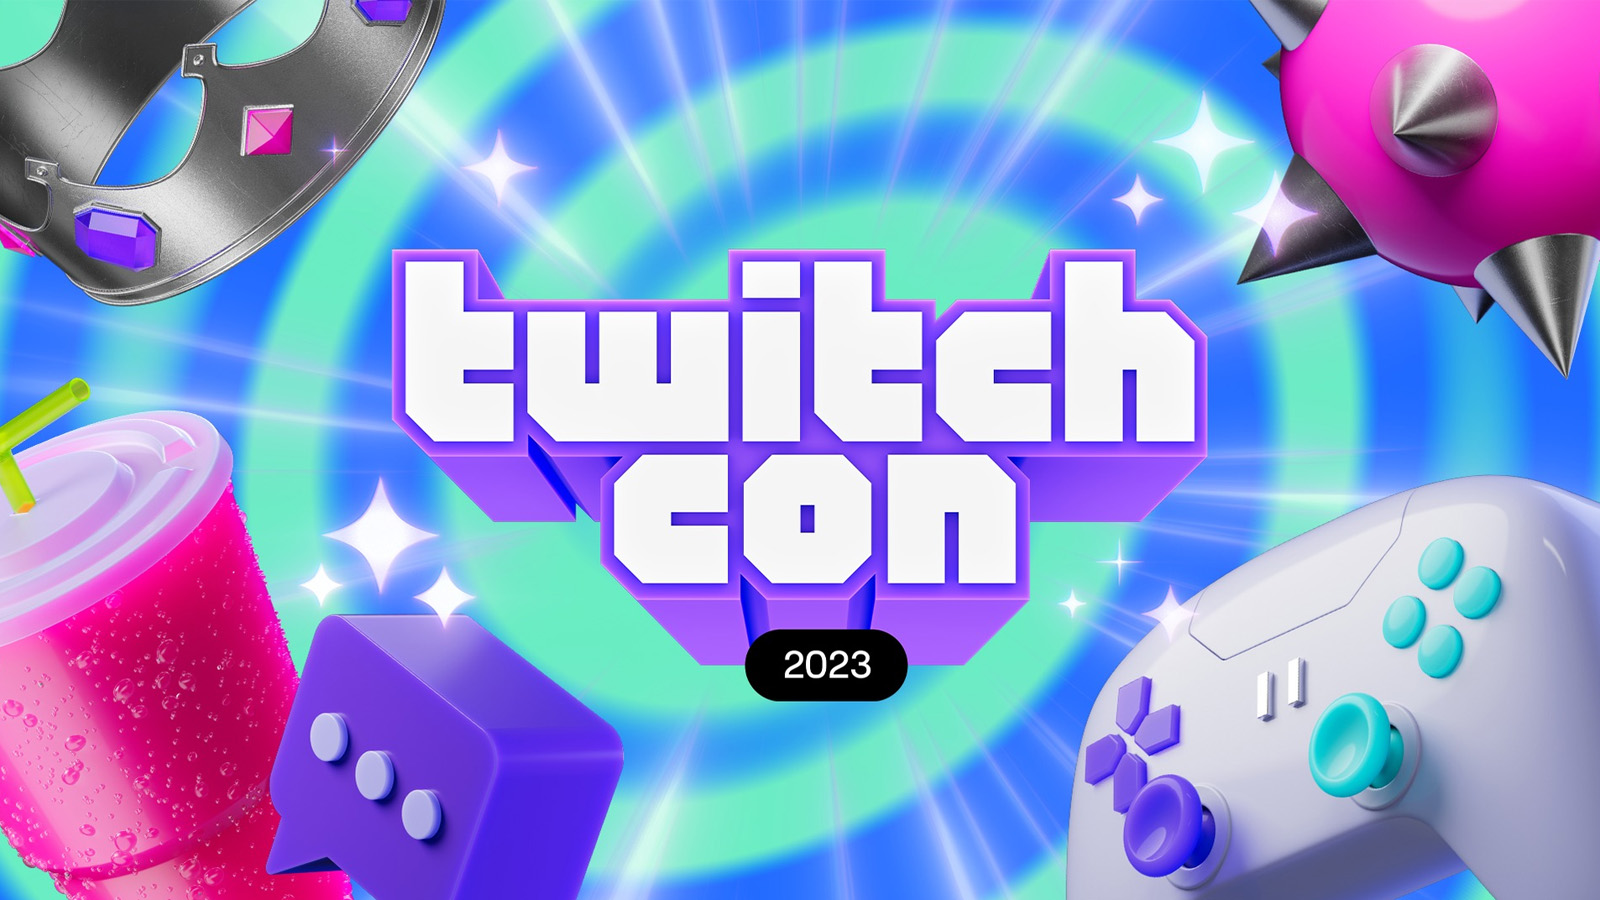 Twitchcon 2023